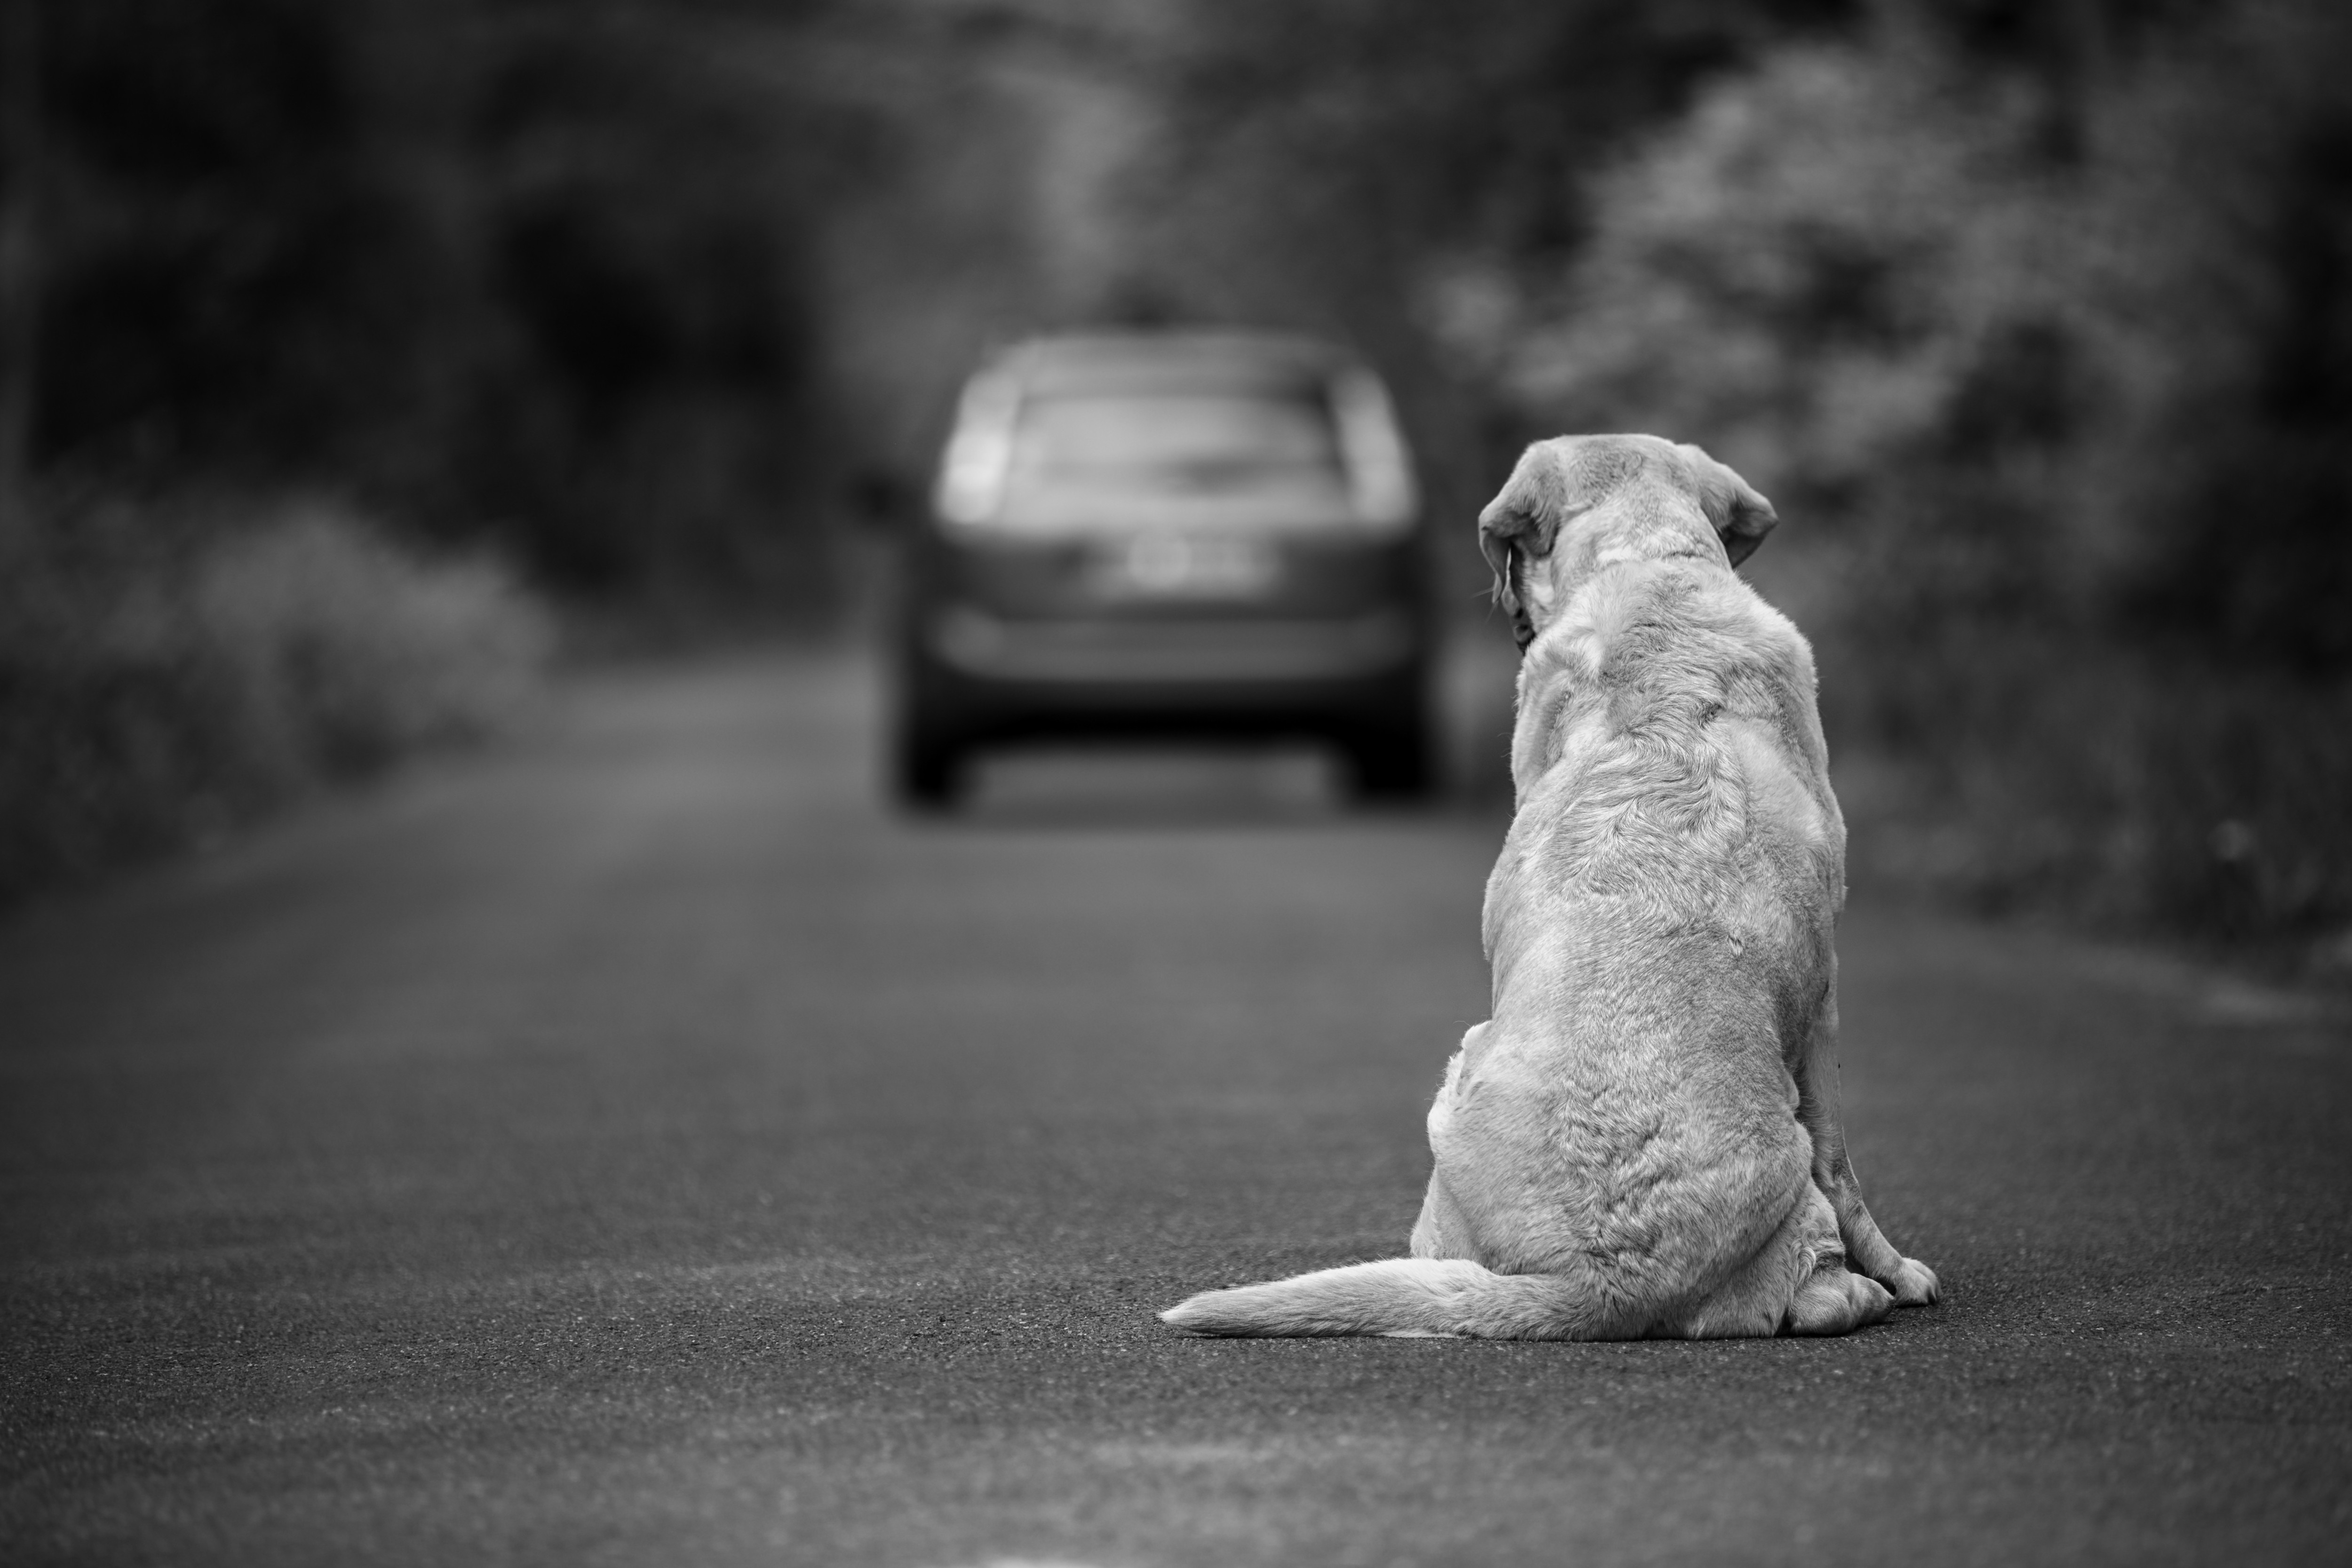 Imagem de um cachorro sentado à beira da estrada, olhando para um carro ao fundo, com árvores nas laterais da rua.